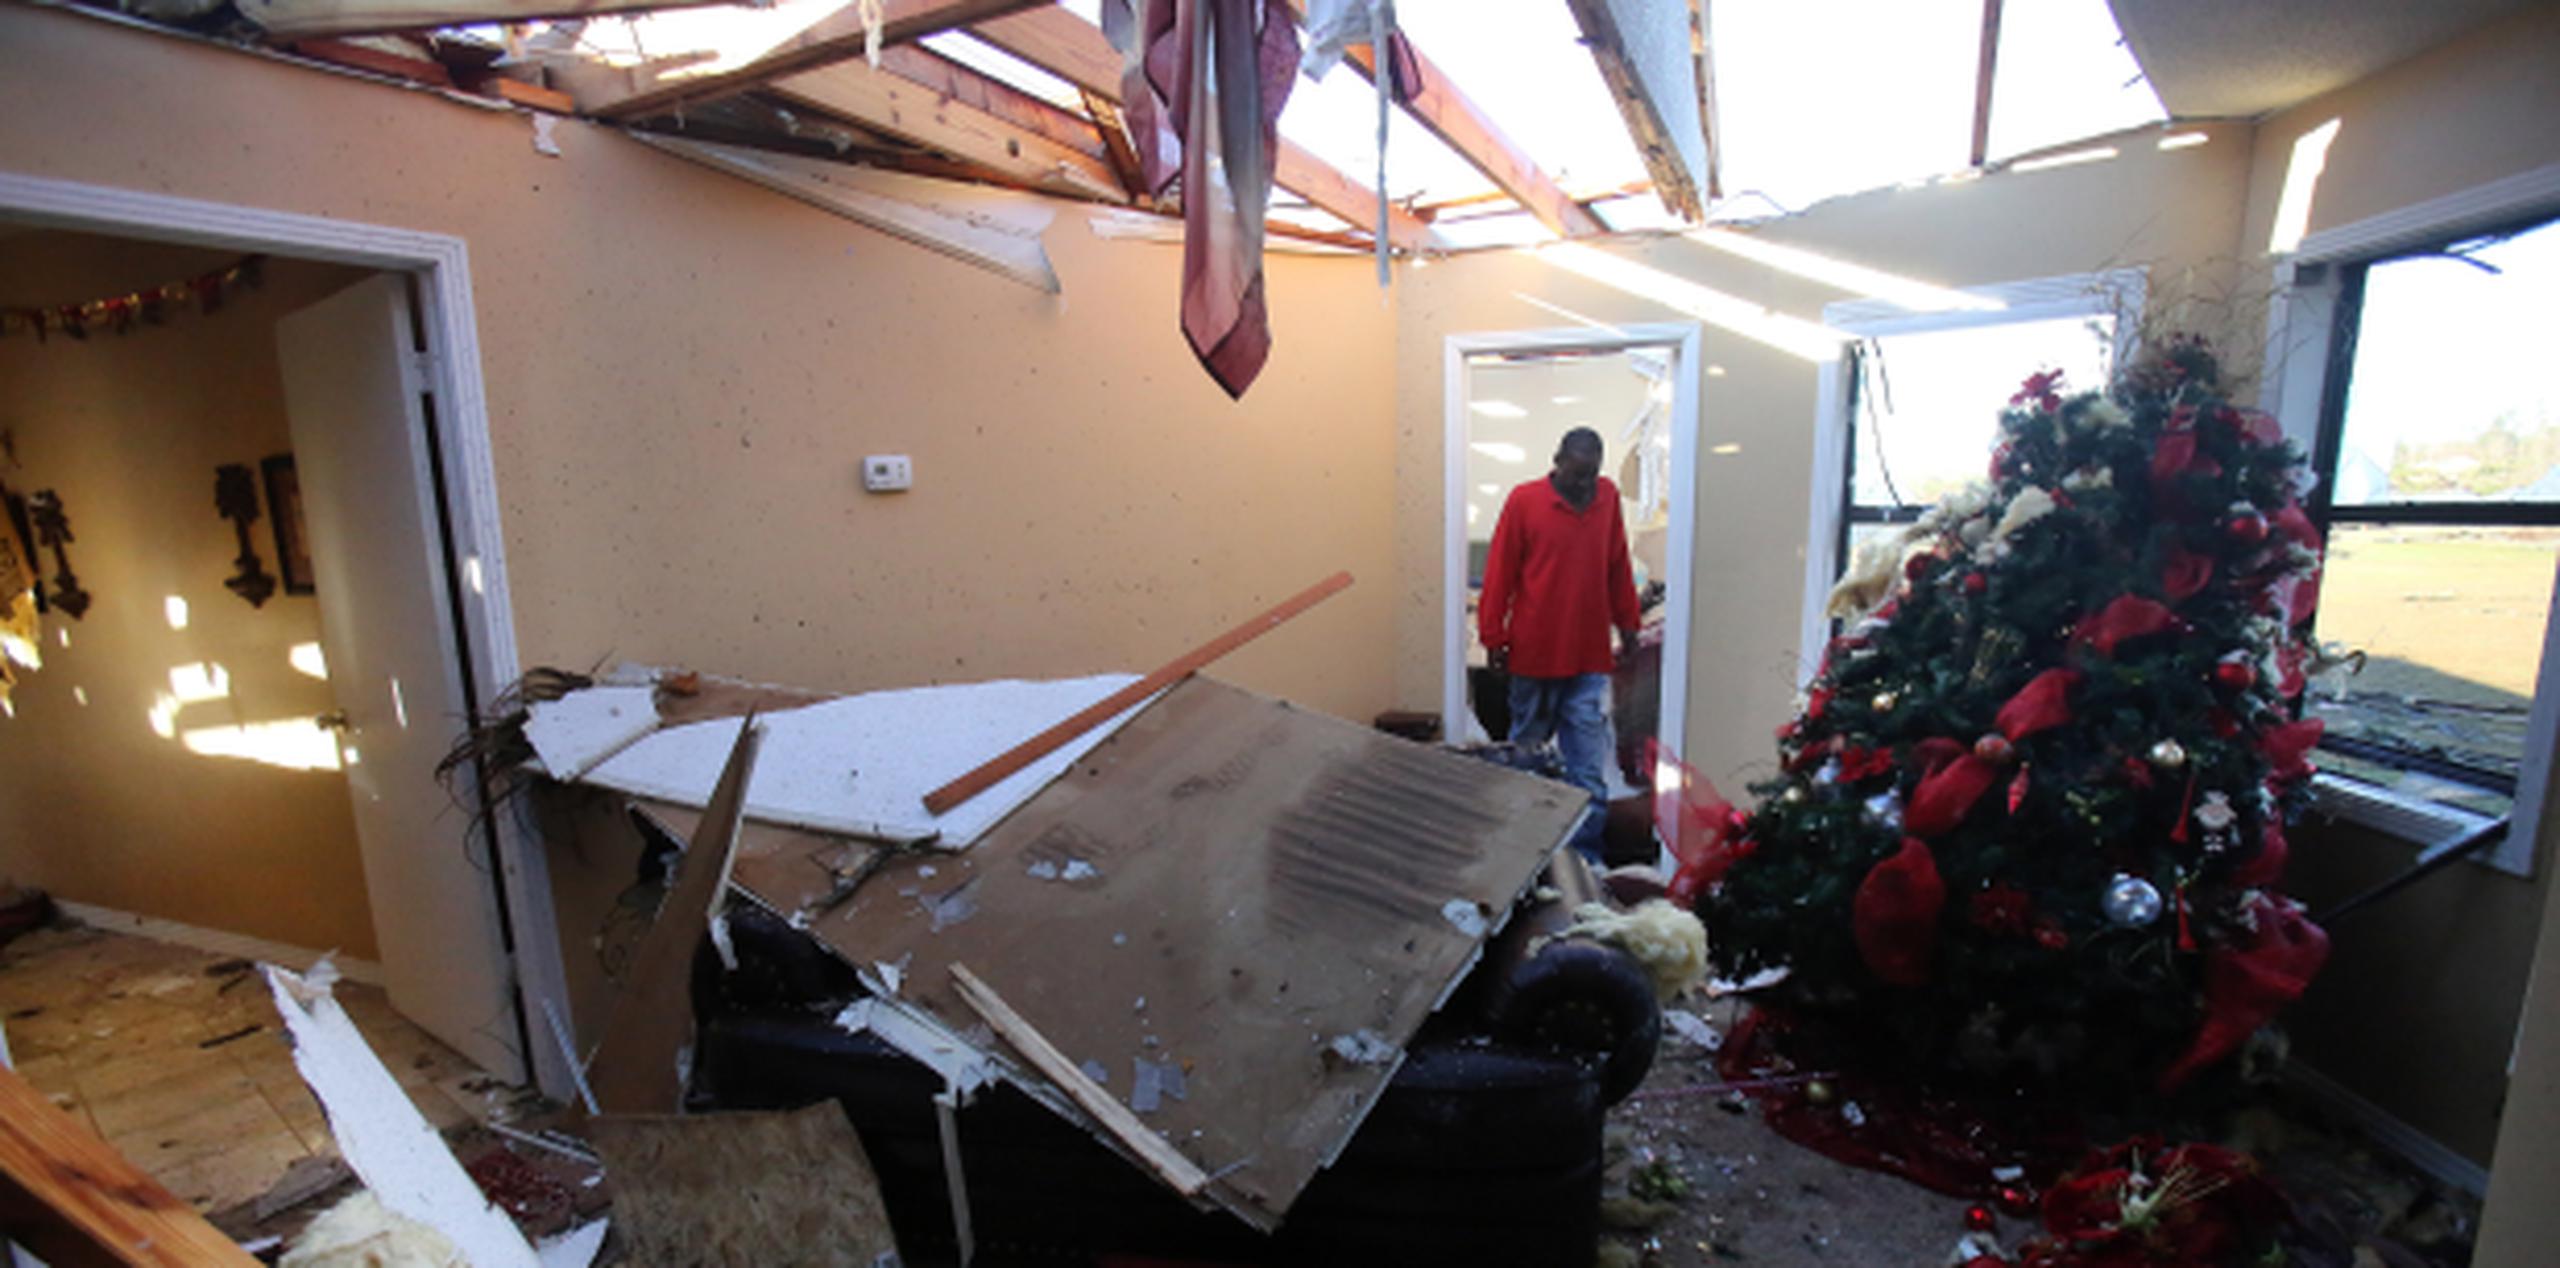 Un hombre camina junto a un árbol de Navidad en medio del destrozo provocado por un tornado en su casa en Holly Springs, Mississippi. (Stan Carroll/The Commercial Appeal via AP)
